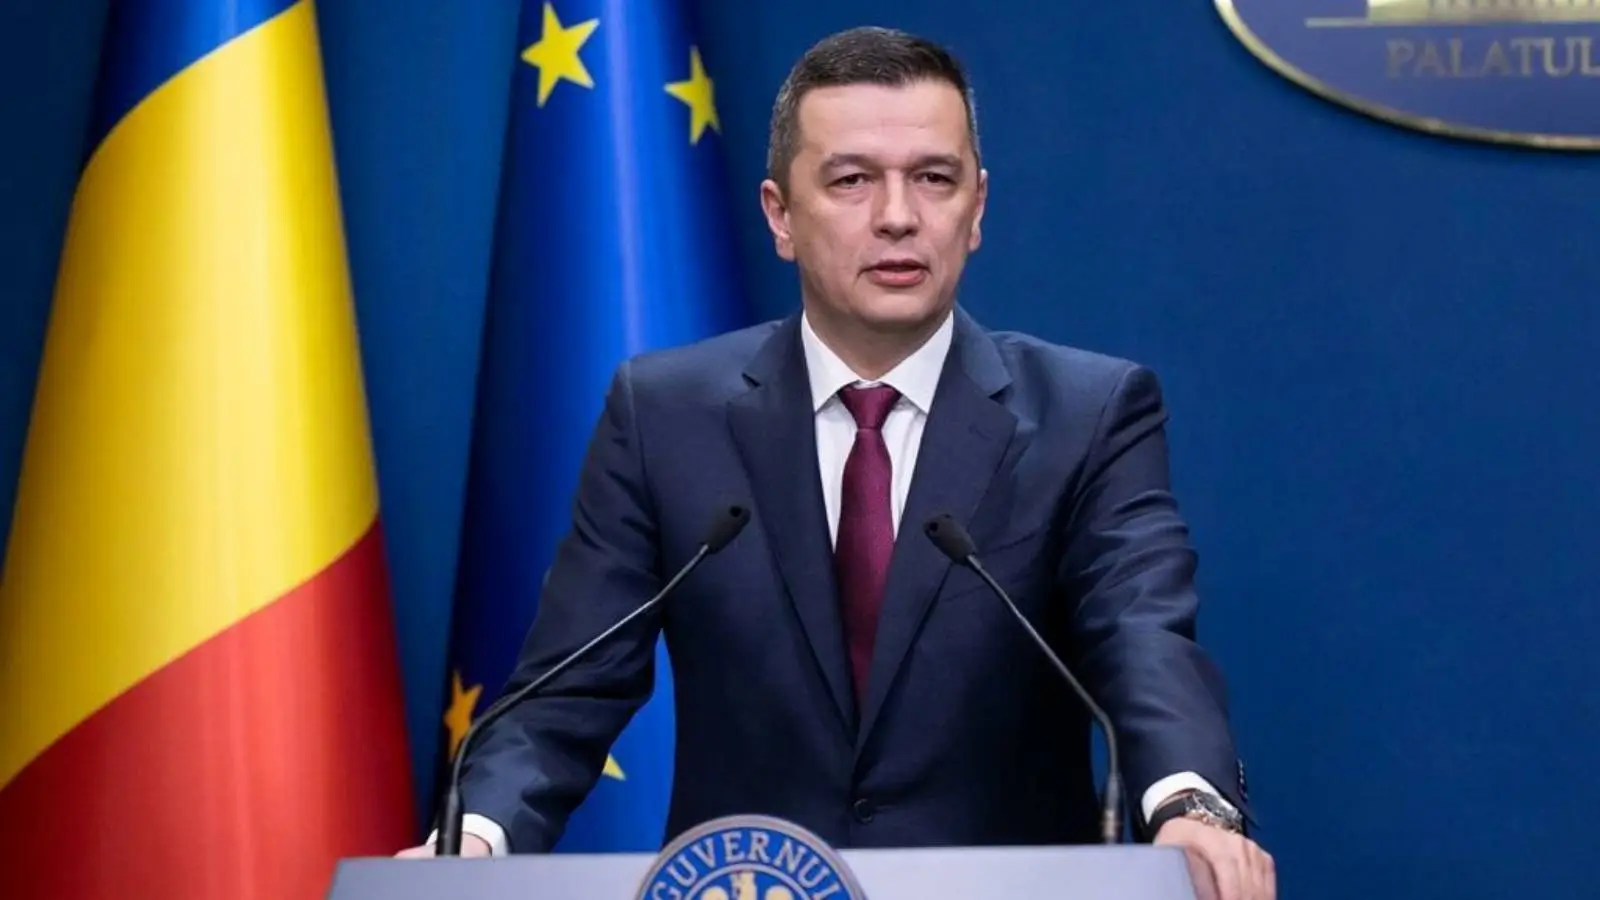 Sorin Grindeanu Anuncios de última hora Decisiones importantes confirmadas Rumanos